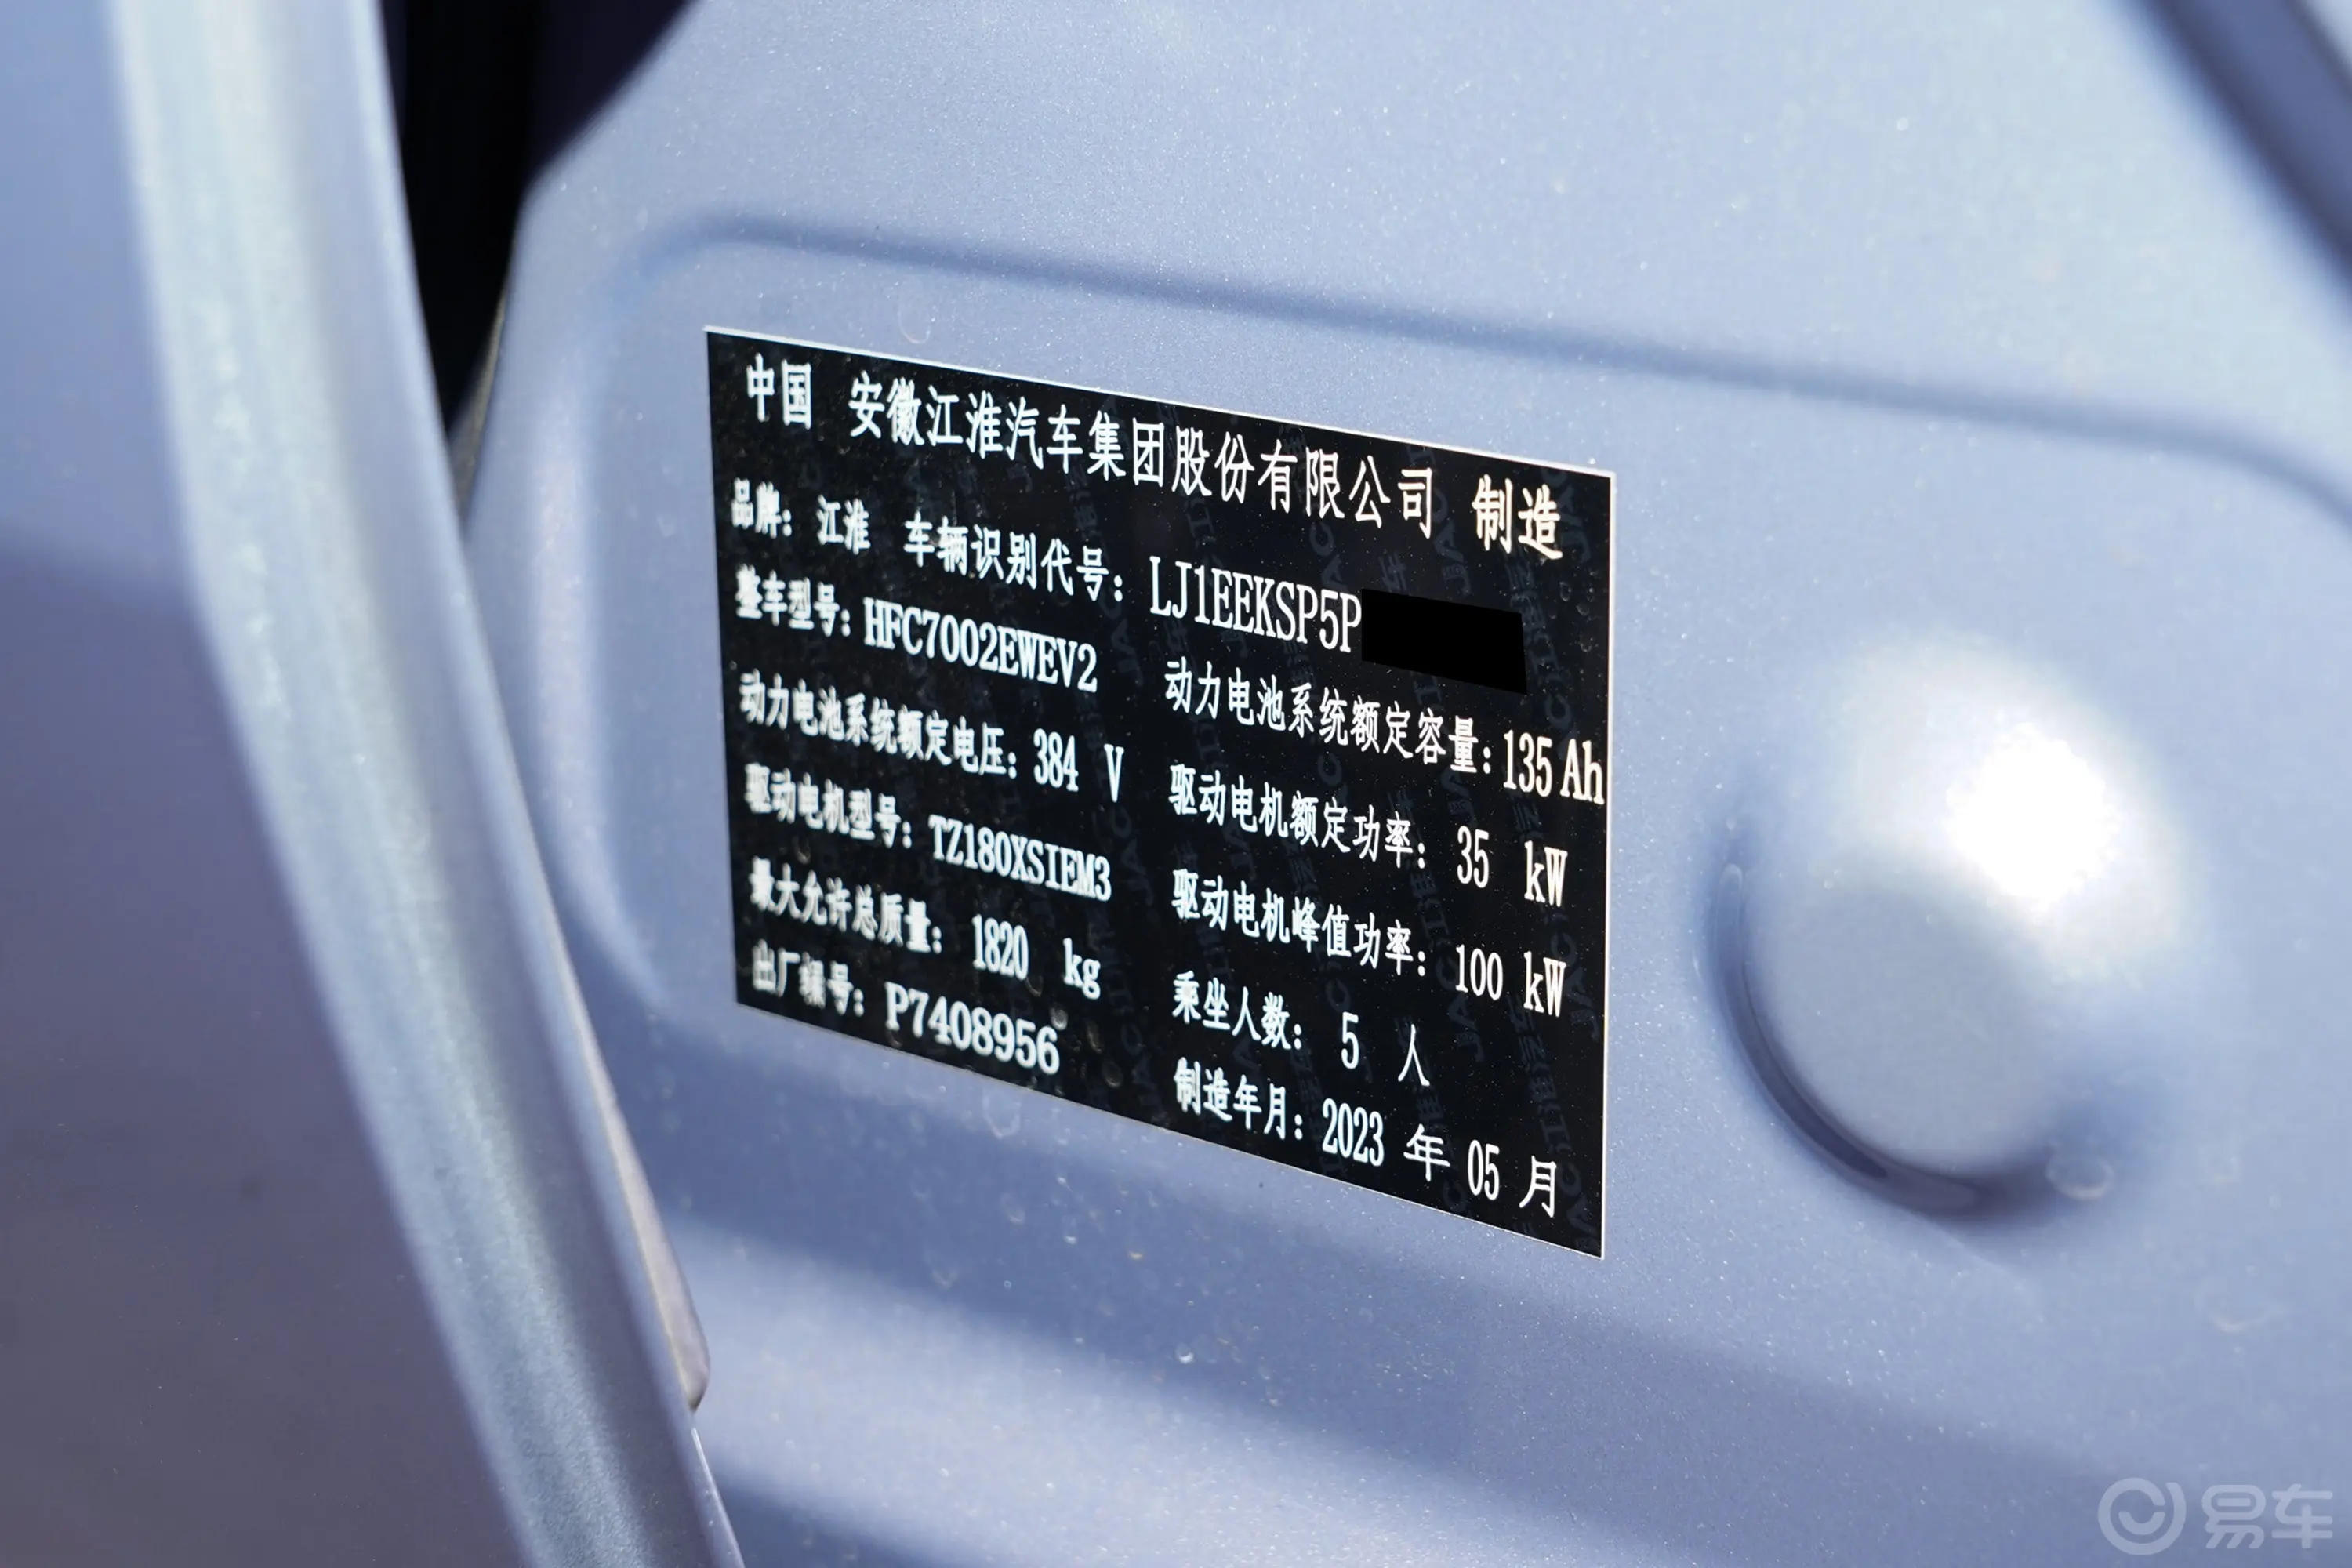 江淮钇为3505km Pro+车辆信息铭牌